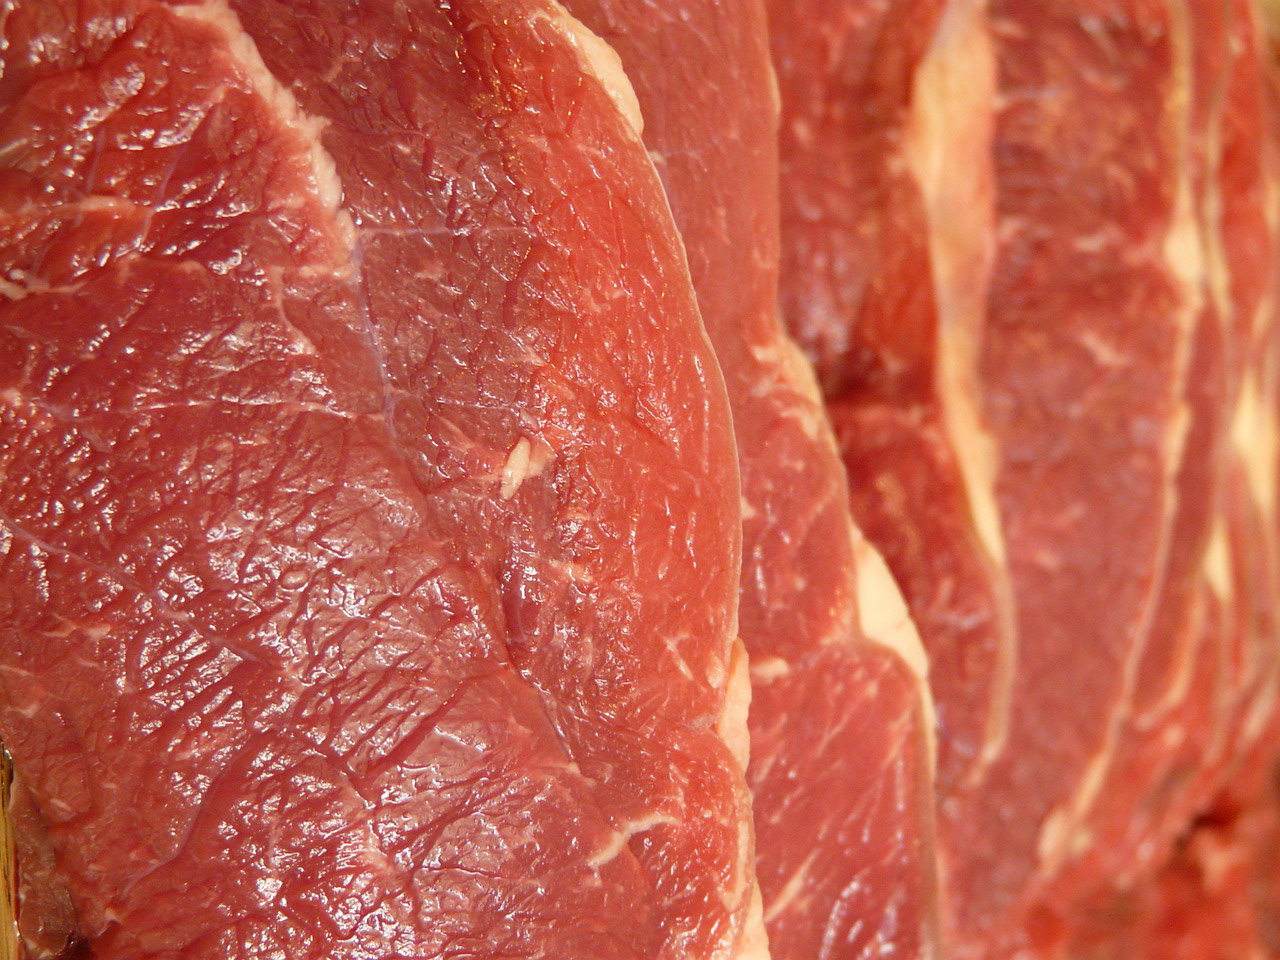 Europa aprueba las ayudas al almacenamiento privado de la carne de cerdo